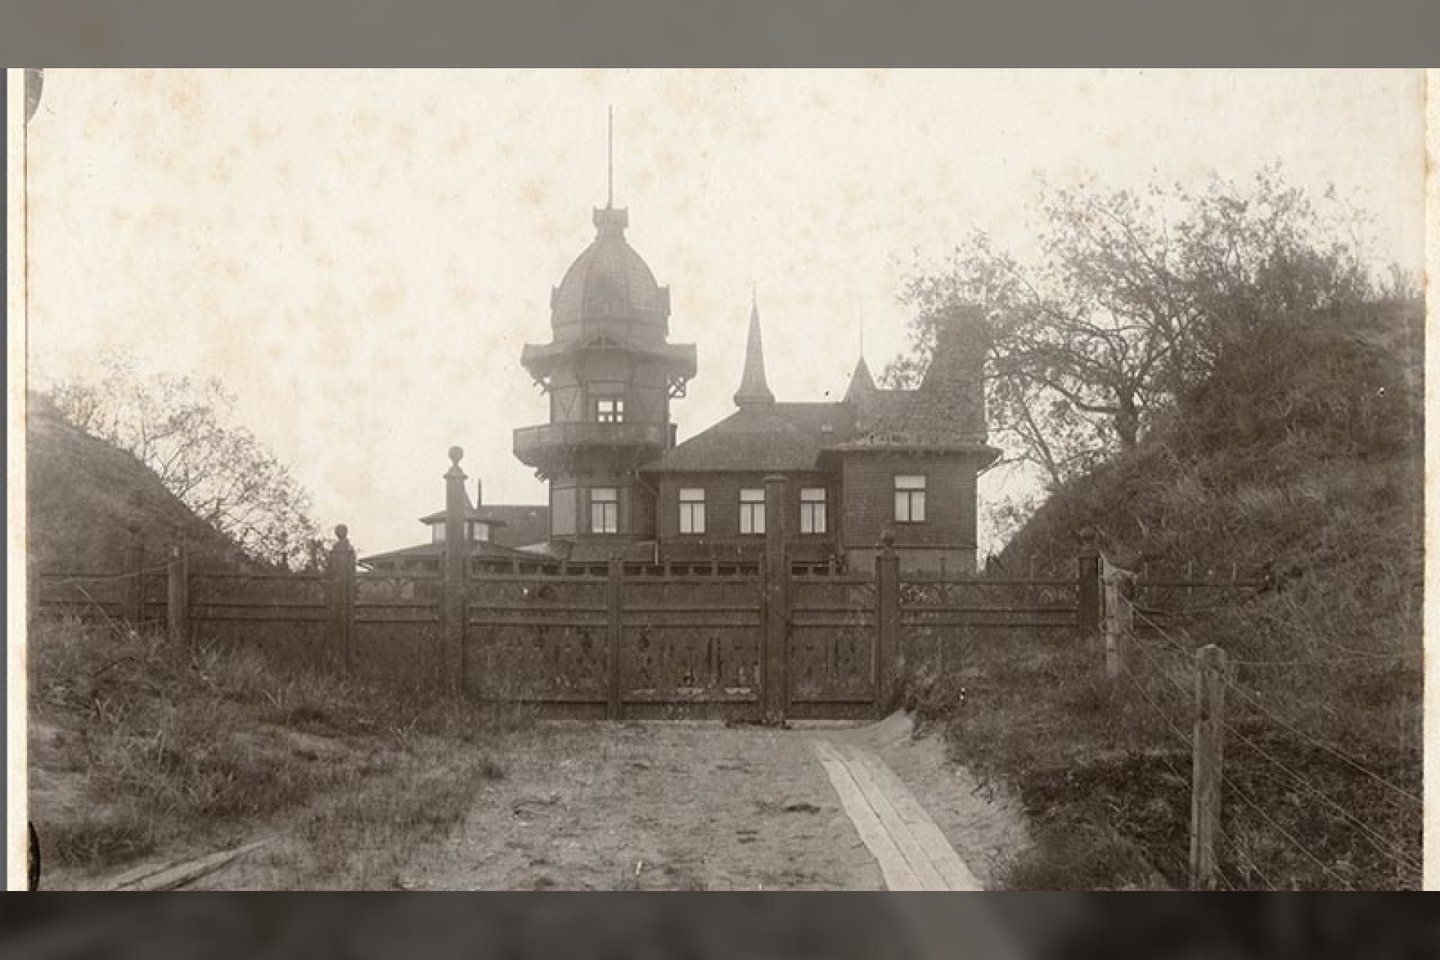  Taip atrodė „Villa Sophie“ XX a. pirmojoje pusėje. Dėl savo neįprastos išvaizdos ji negalėjo likti nepastebėta ir neapkalbėta.<br> Palangos kurorto muziejaus archyvų nuotr.